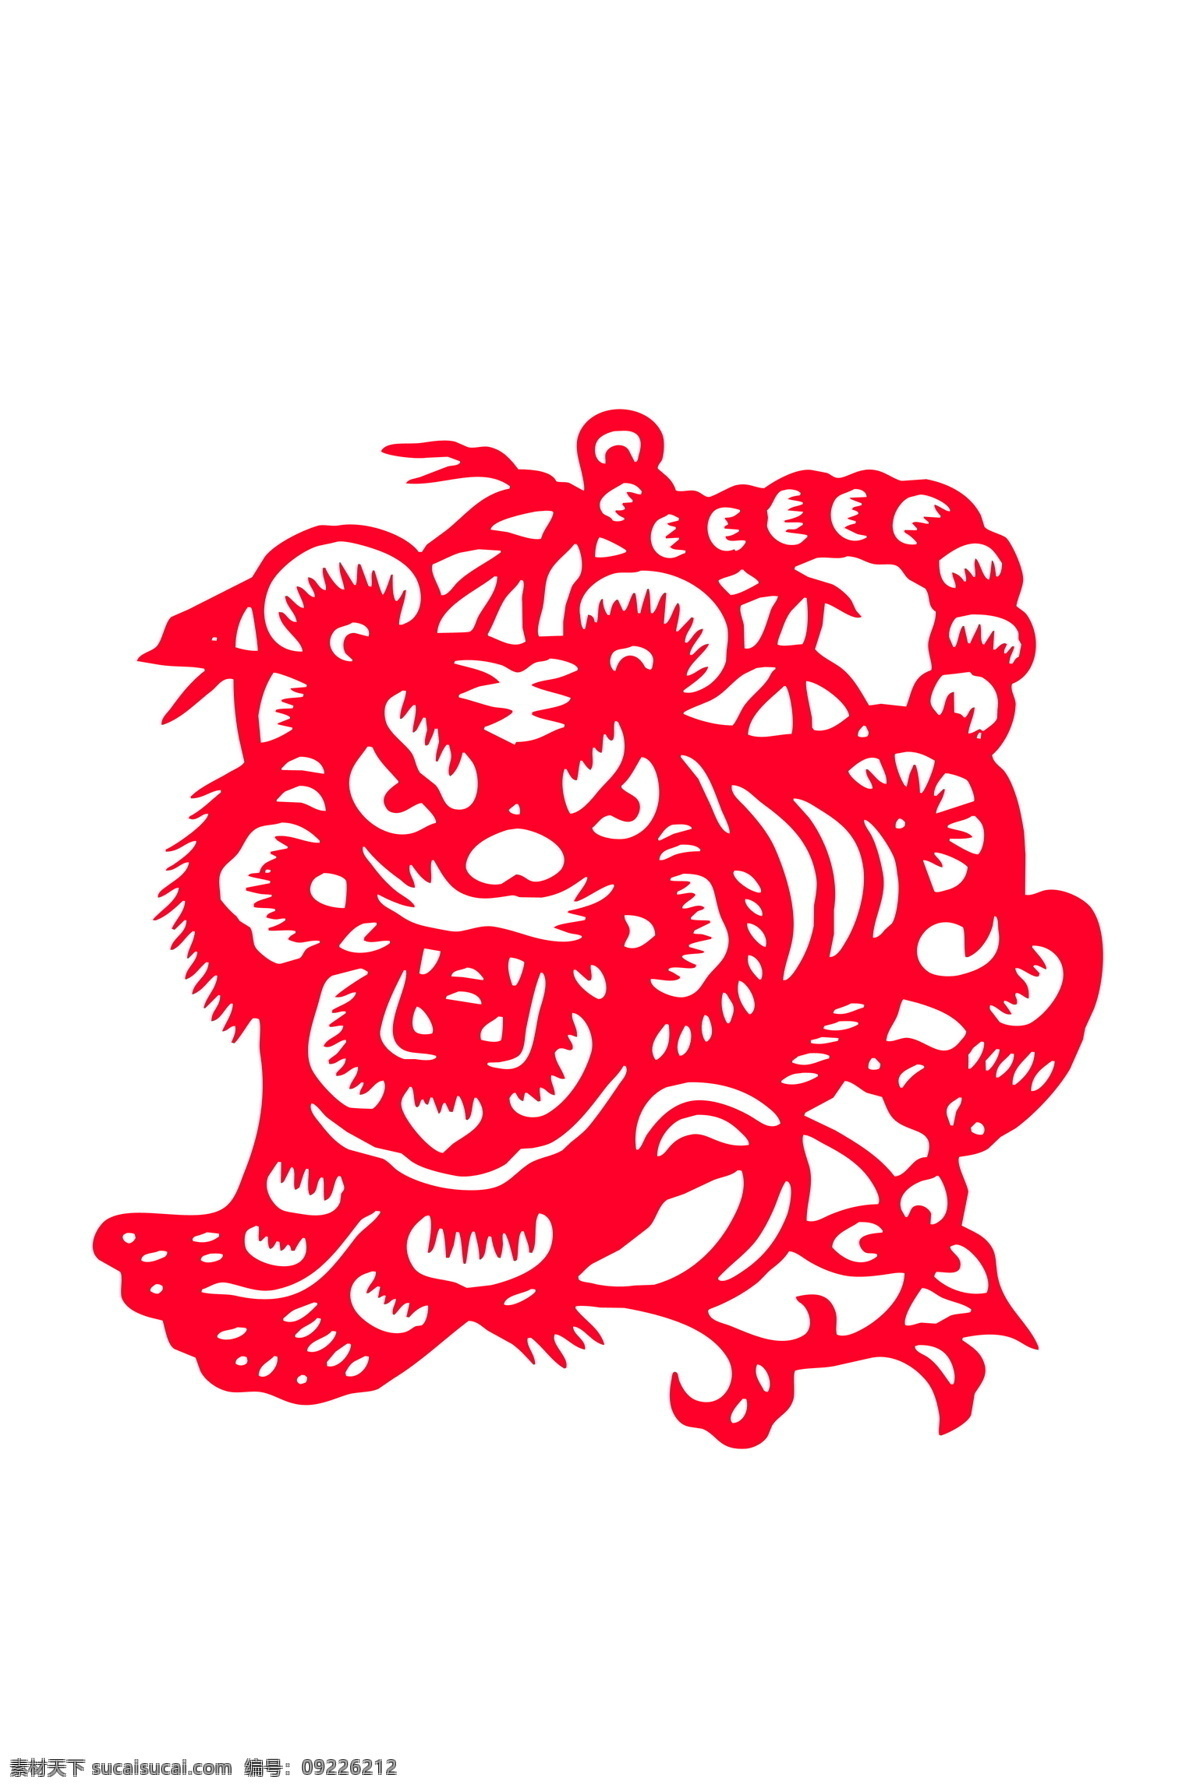 剪纸 虎 传统文化 红色 虎年 老虎 生肖 文化艺术 设计素材 模板下载 剪纸虎